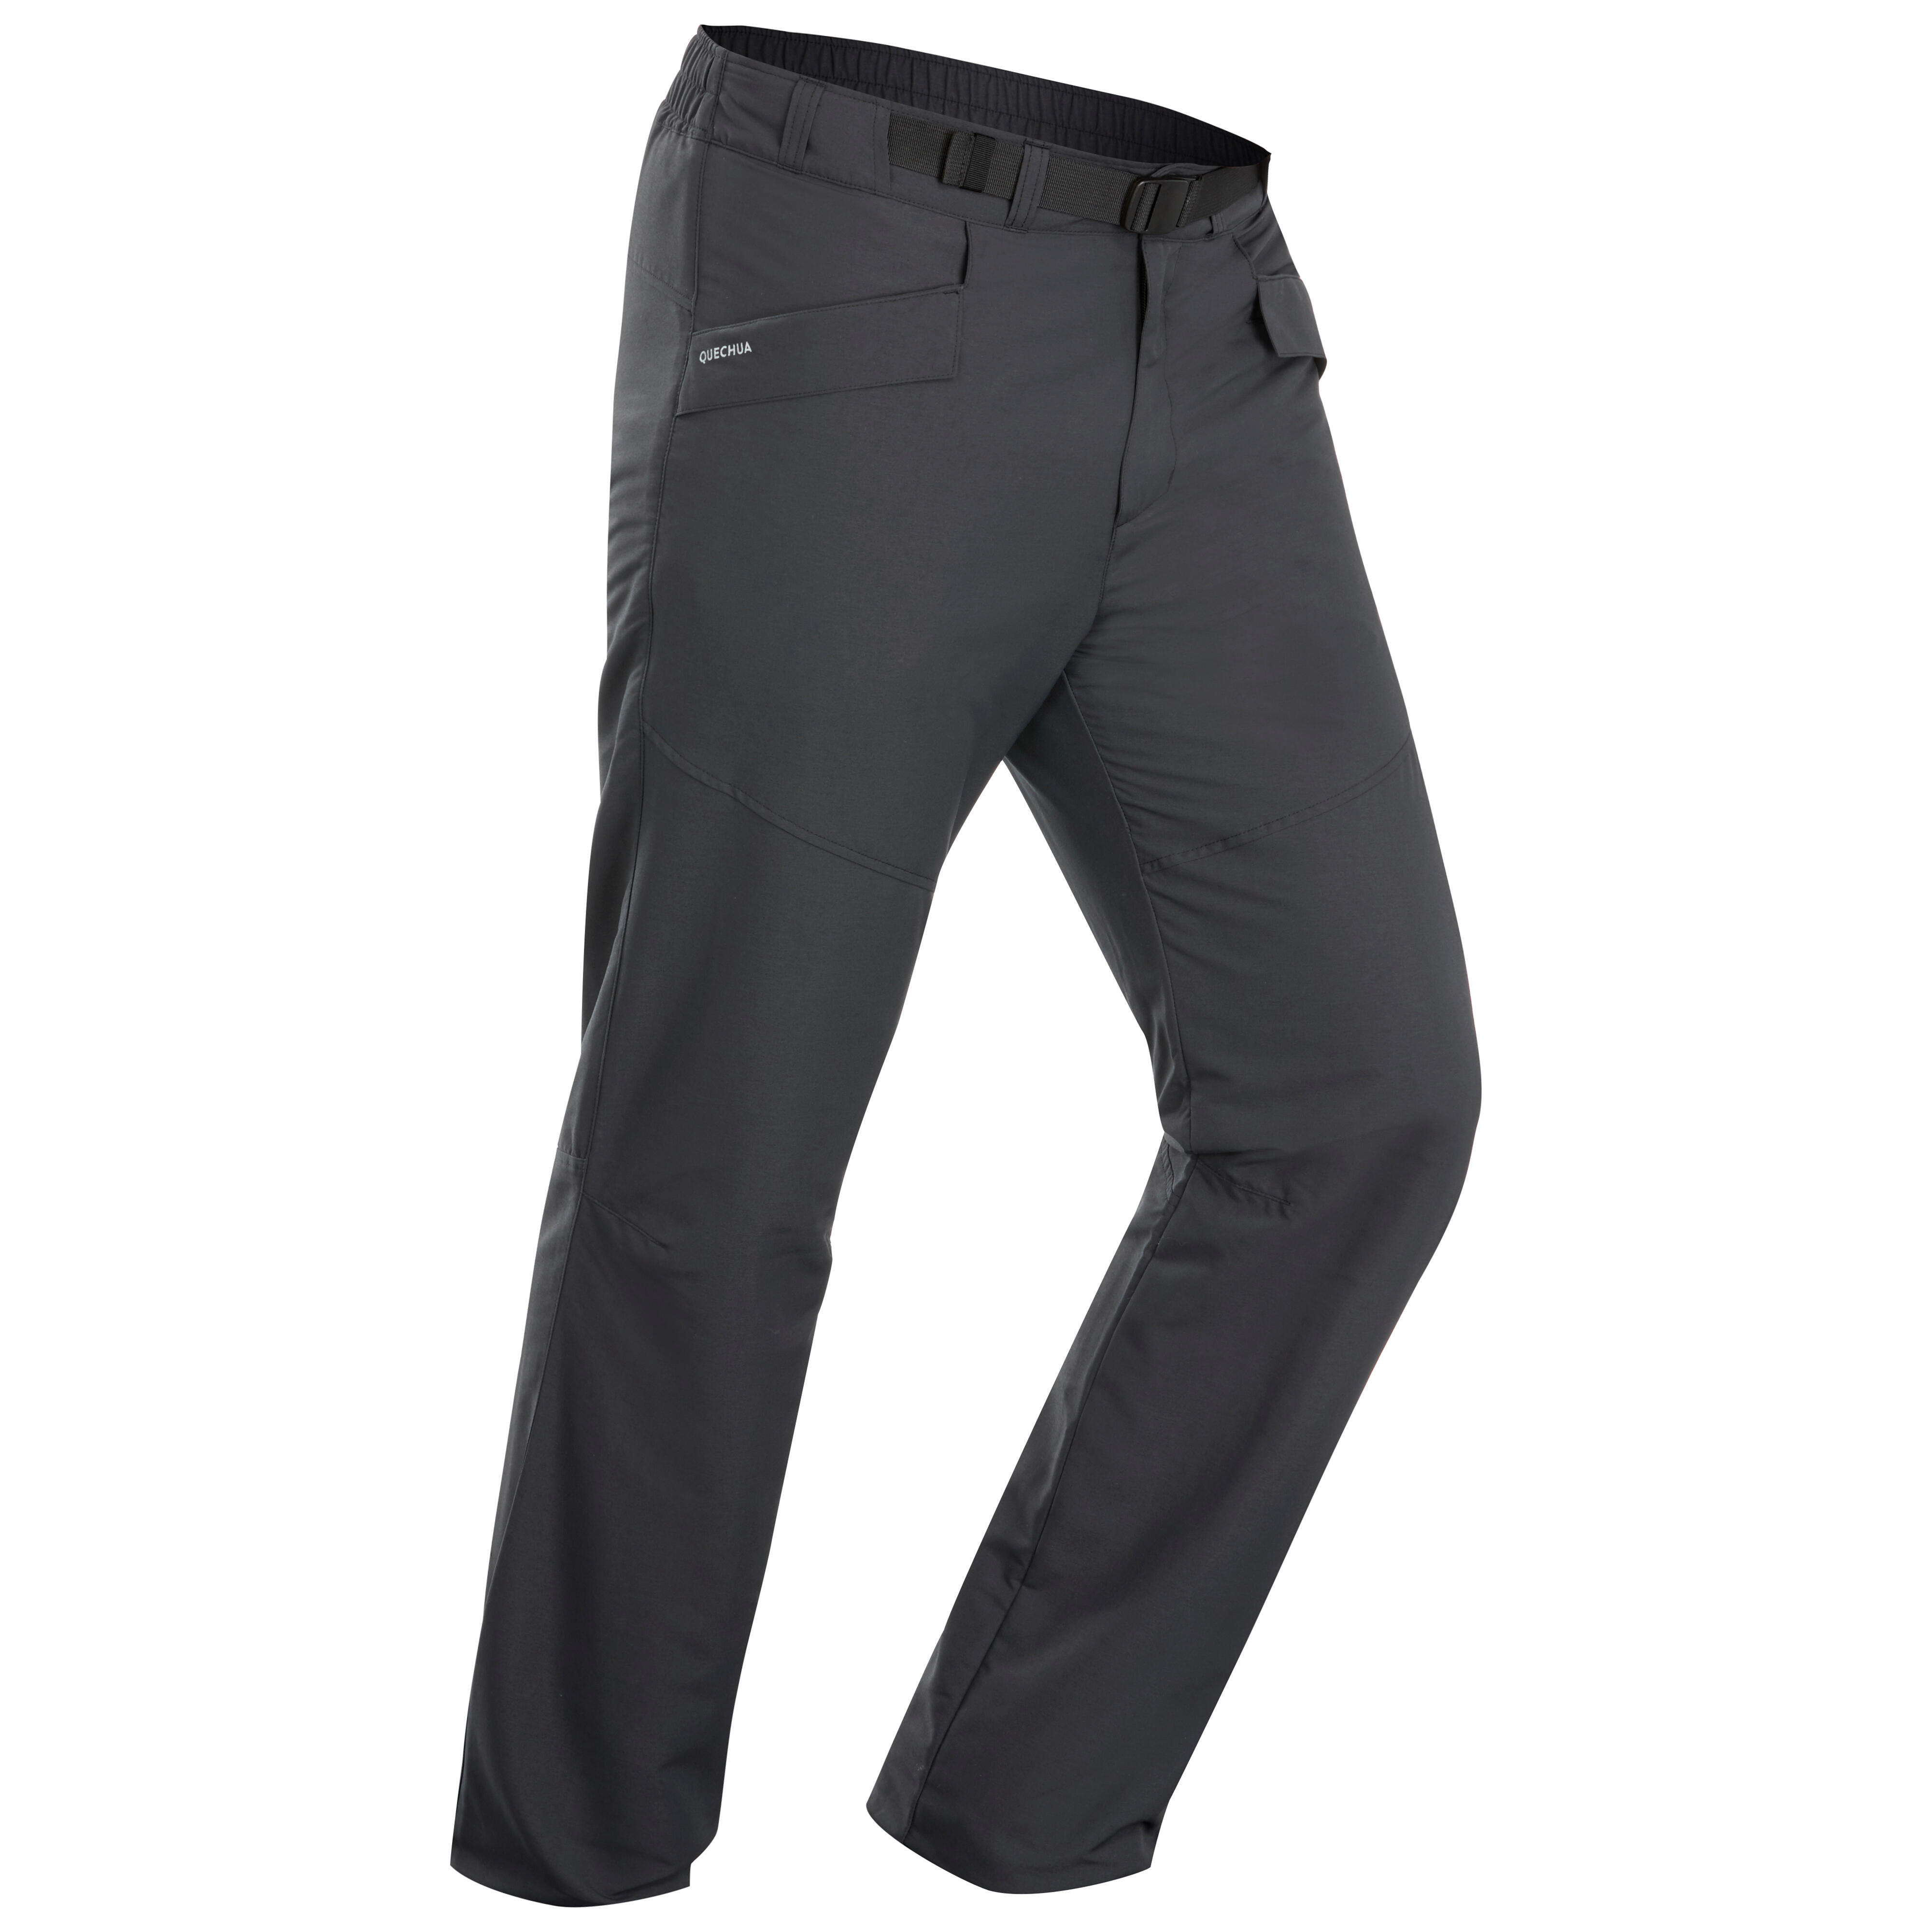 Pantalon chaud homme – SH 100 gris - QUECHUA